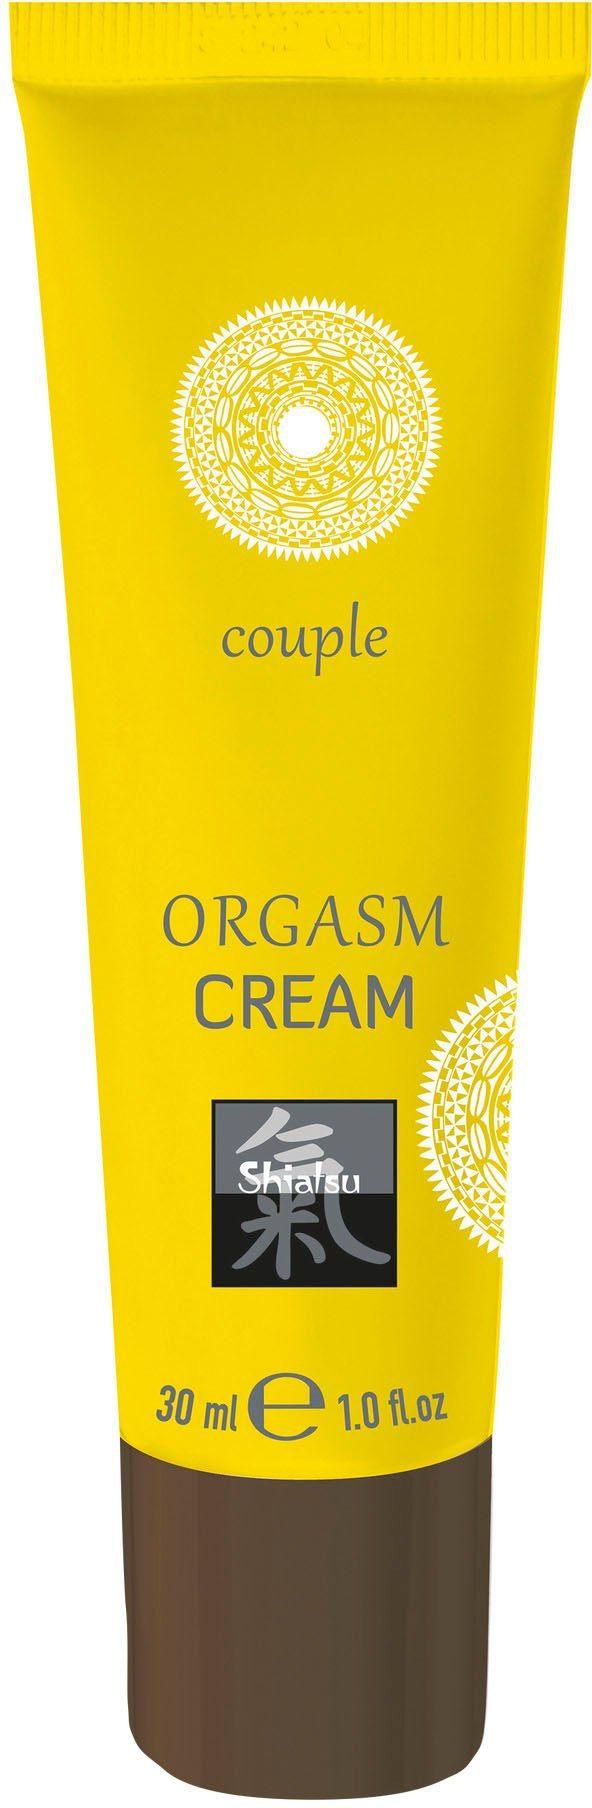 Shiatsu Orgasm Cream Intimcreme,